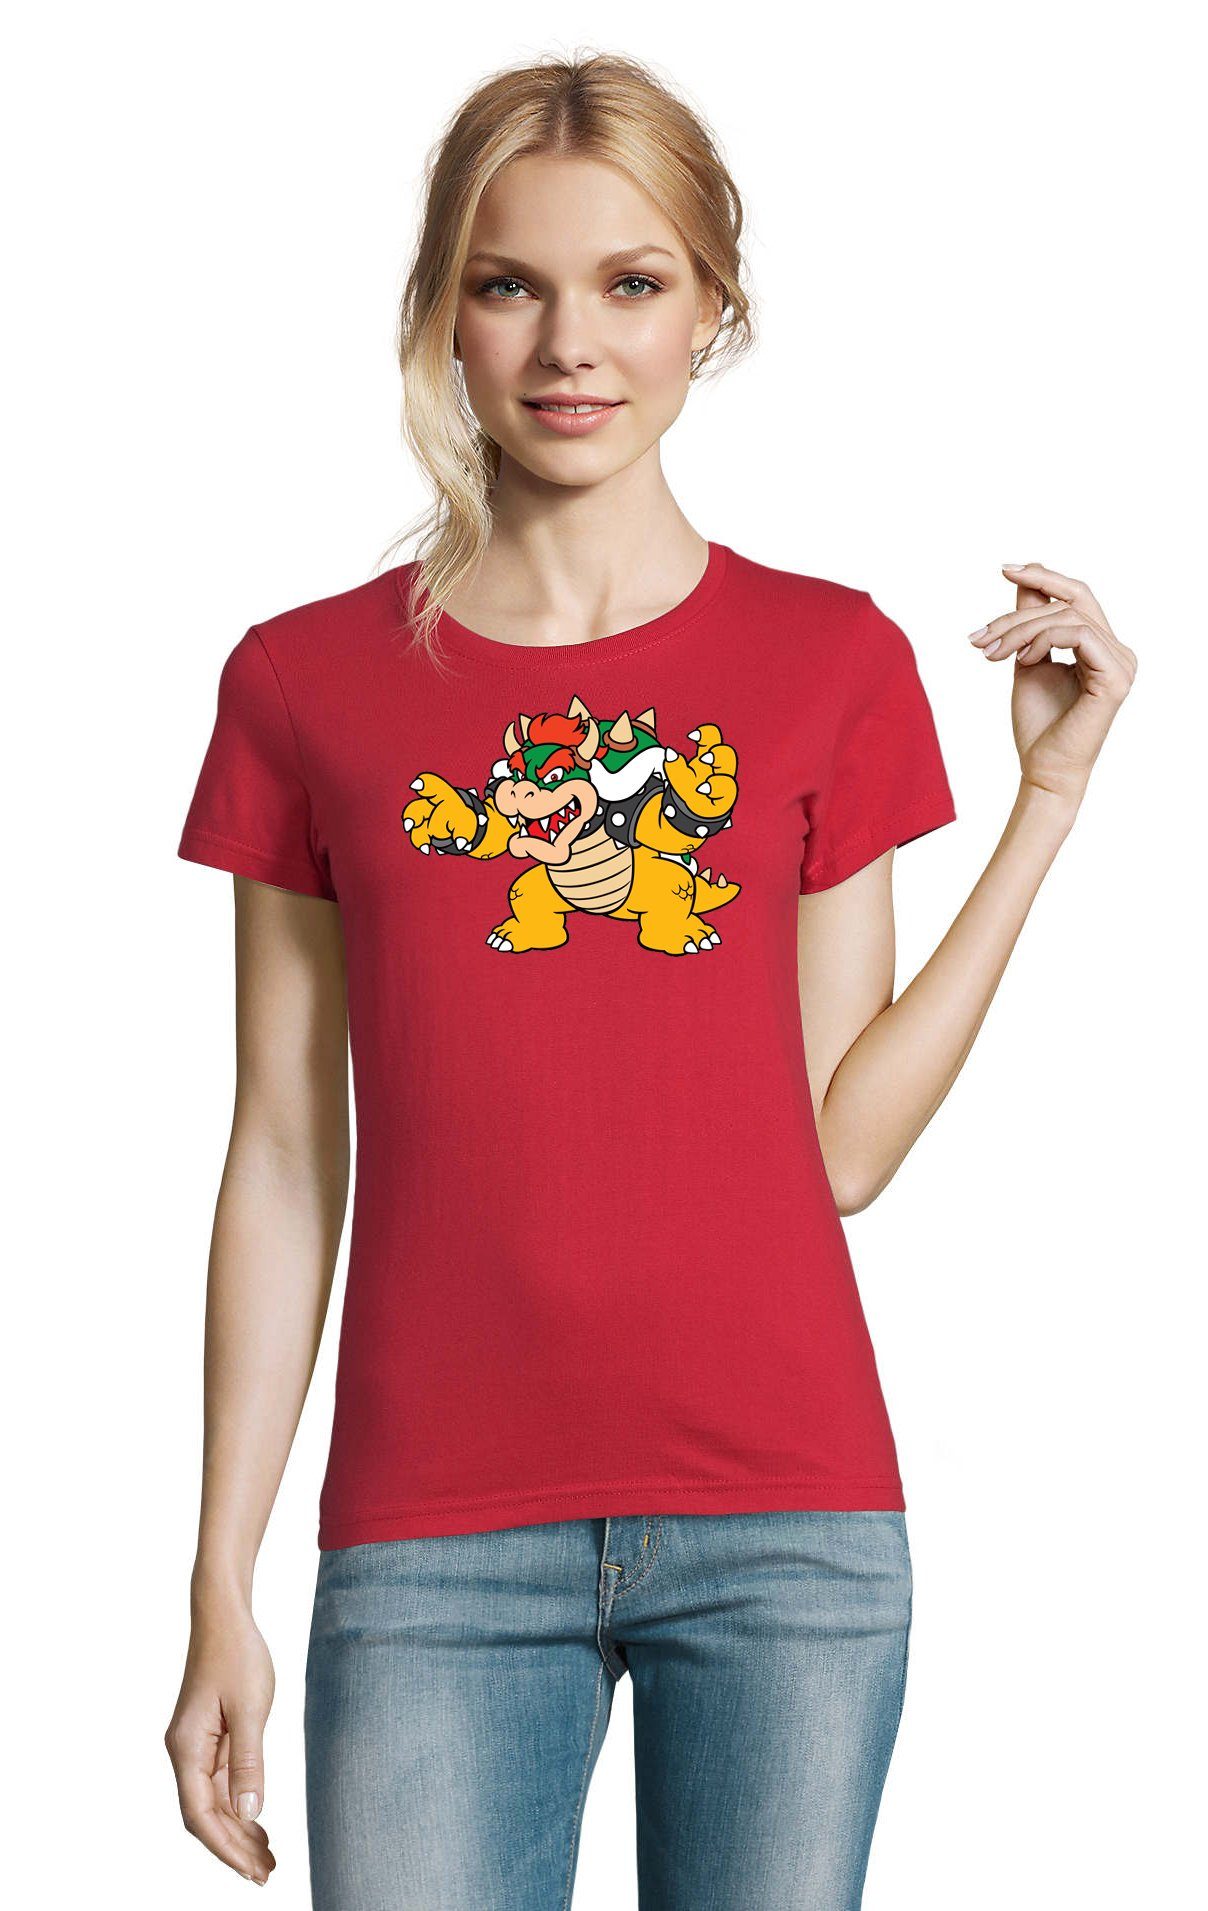 Blondie & Brownie Game Yoshi Mario Damen Bowser Nintendo Rot Luigi Gamer Gaming Konsole T-Shirt